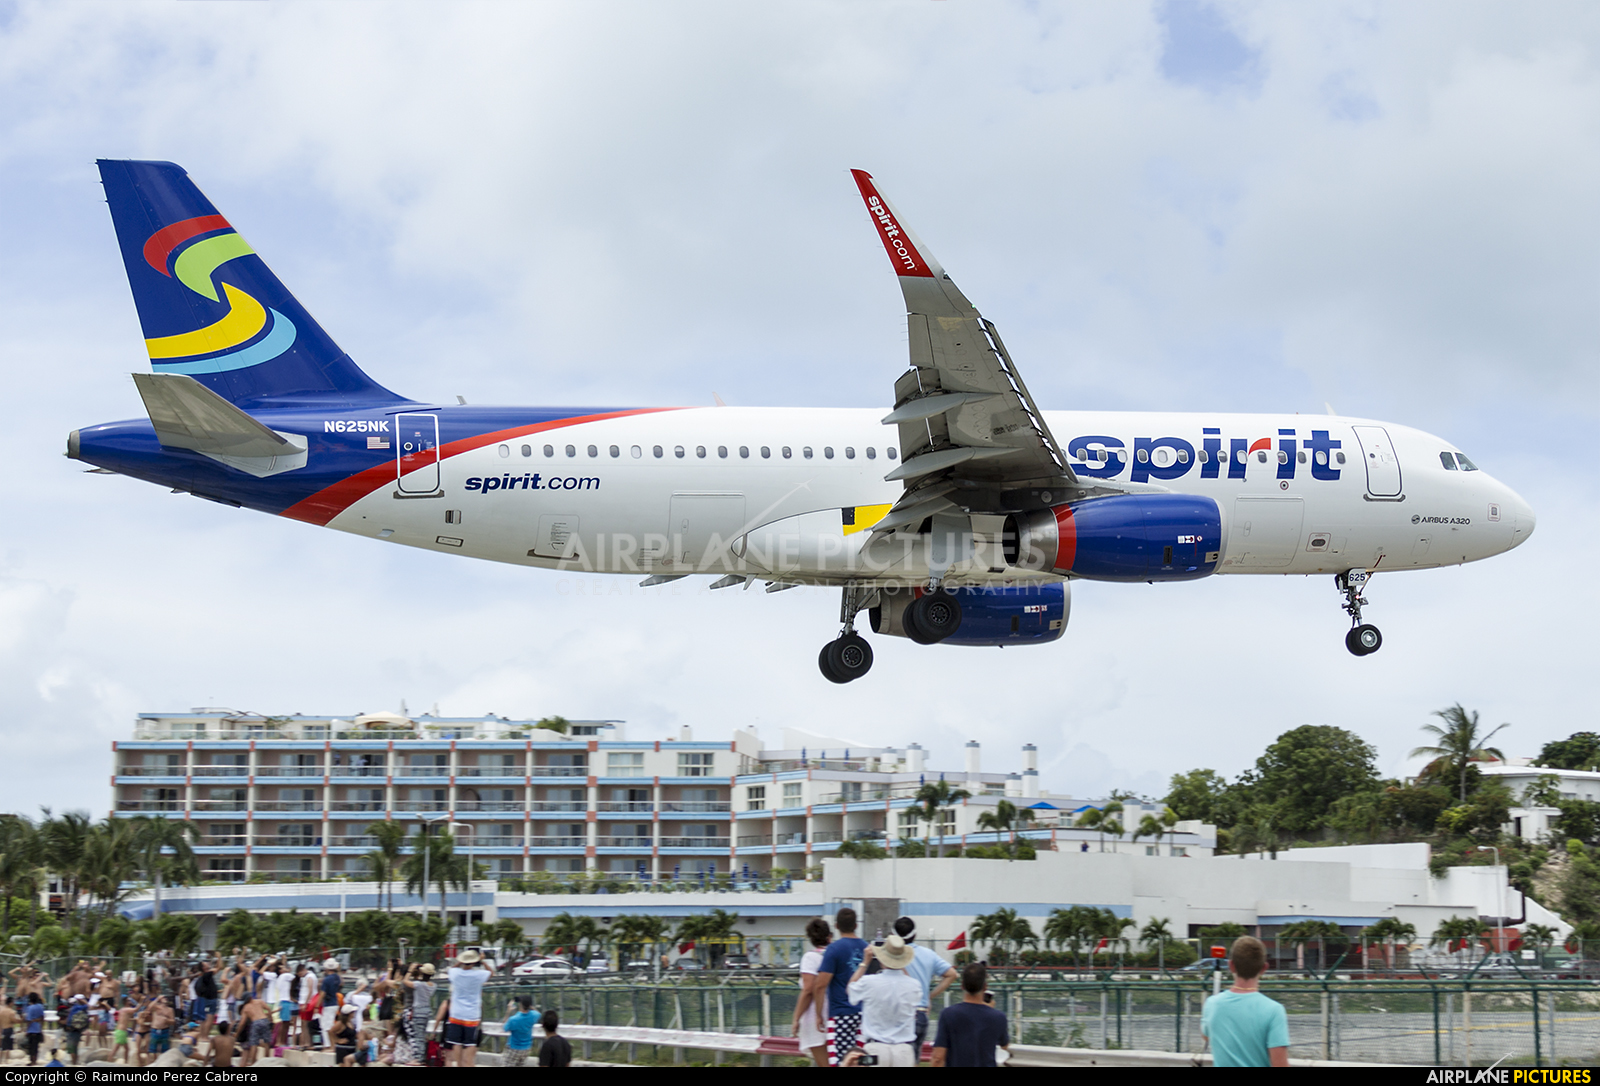 Spirit Airlines N625NK aircraft at Sint Maarten - Princess Juliana Intl